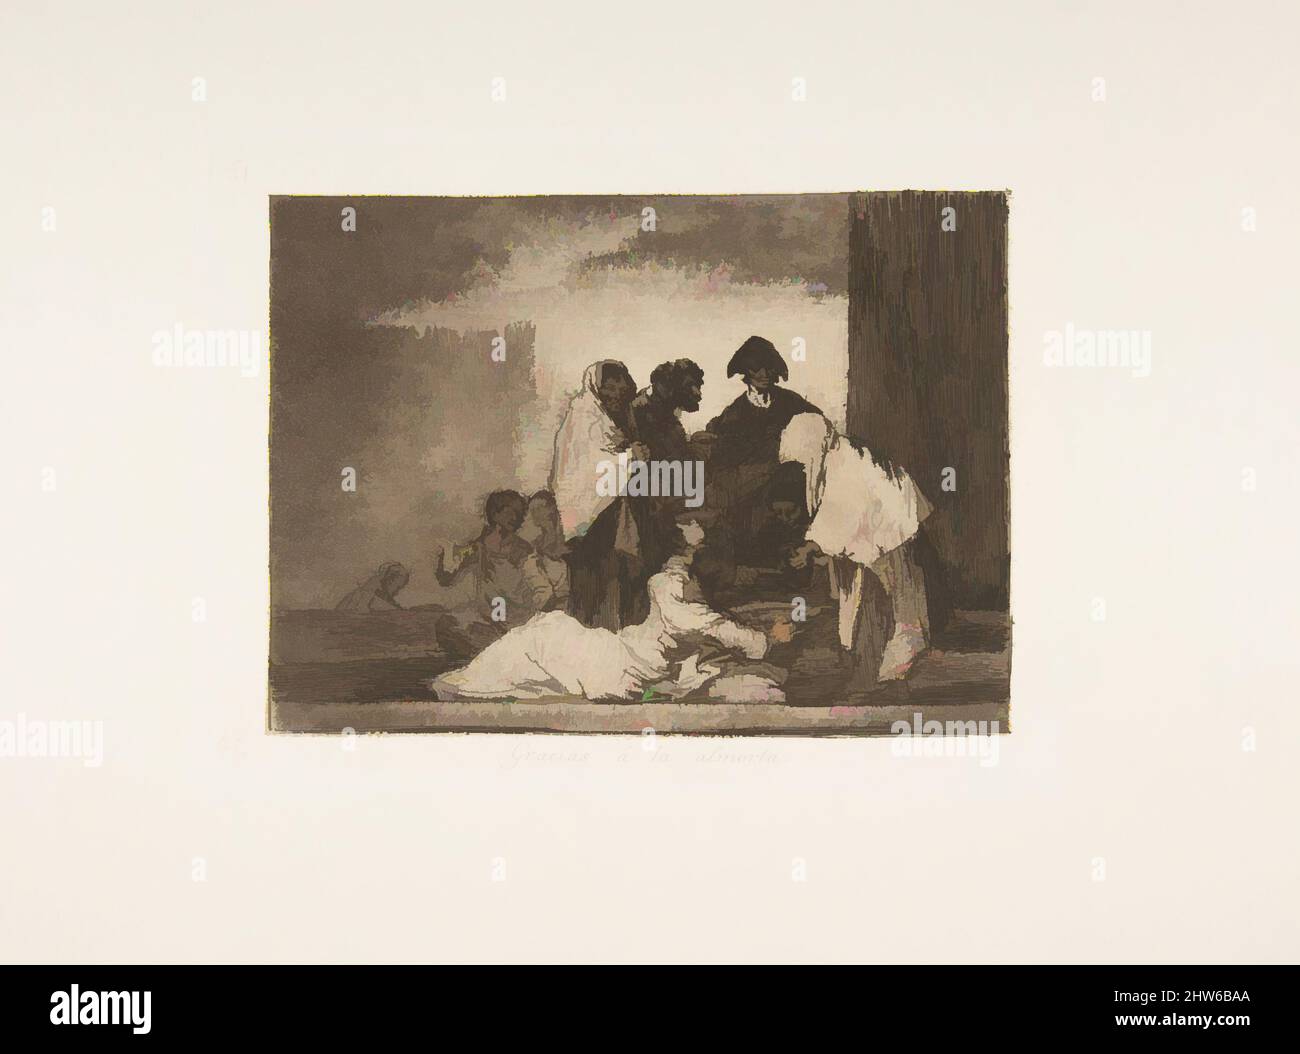 Art inspiré par la planche 51 de 'les désastres de la guerre' (Los Desastres de la Guerra): 'Grâce au millet.' (Gracias á la almorta.), 1811–12 (publié en 1863), Décapage et aquatint bruni, plaque : 6 1/8 × 7 7/8 po. (15,5 × 20 cm), Prints, Goya (Francisco de Goya y Lucientes) (espagnol, oeuvres classiques modernisées par Artotop avec une touche de modernité. Formes, couleur et valeur, impact visuel accrocheur sur l'art émotions par la liberté d'œuvres d'art d'une manière contemporaine. Un message intemporel qui cherche une nouvelle direction créative. Artistes qui se tournent vers le support numérique et créent le NFT Artotop Banque D'Images